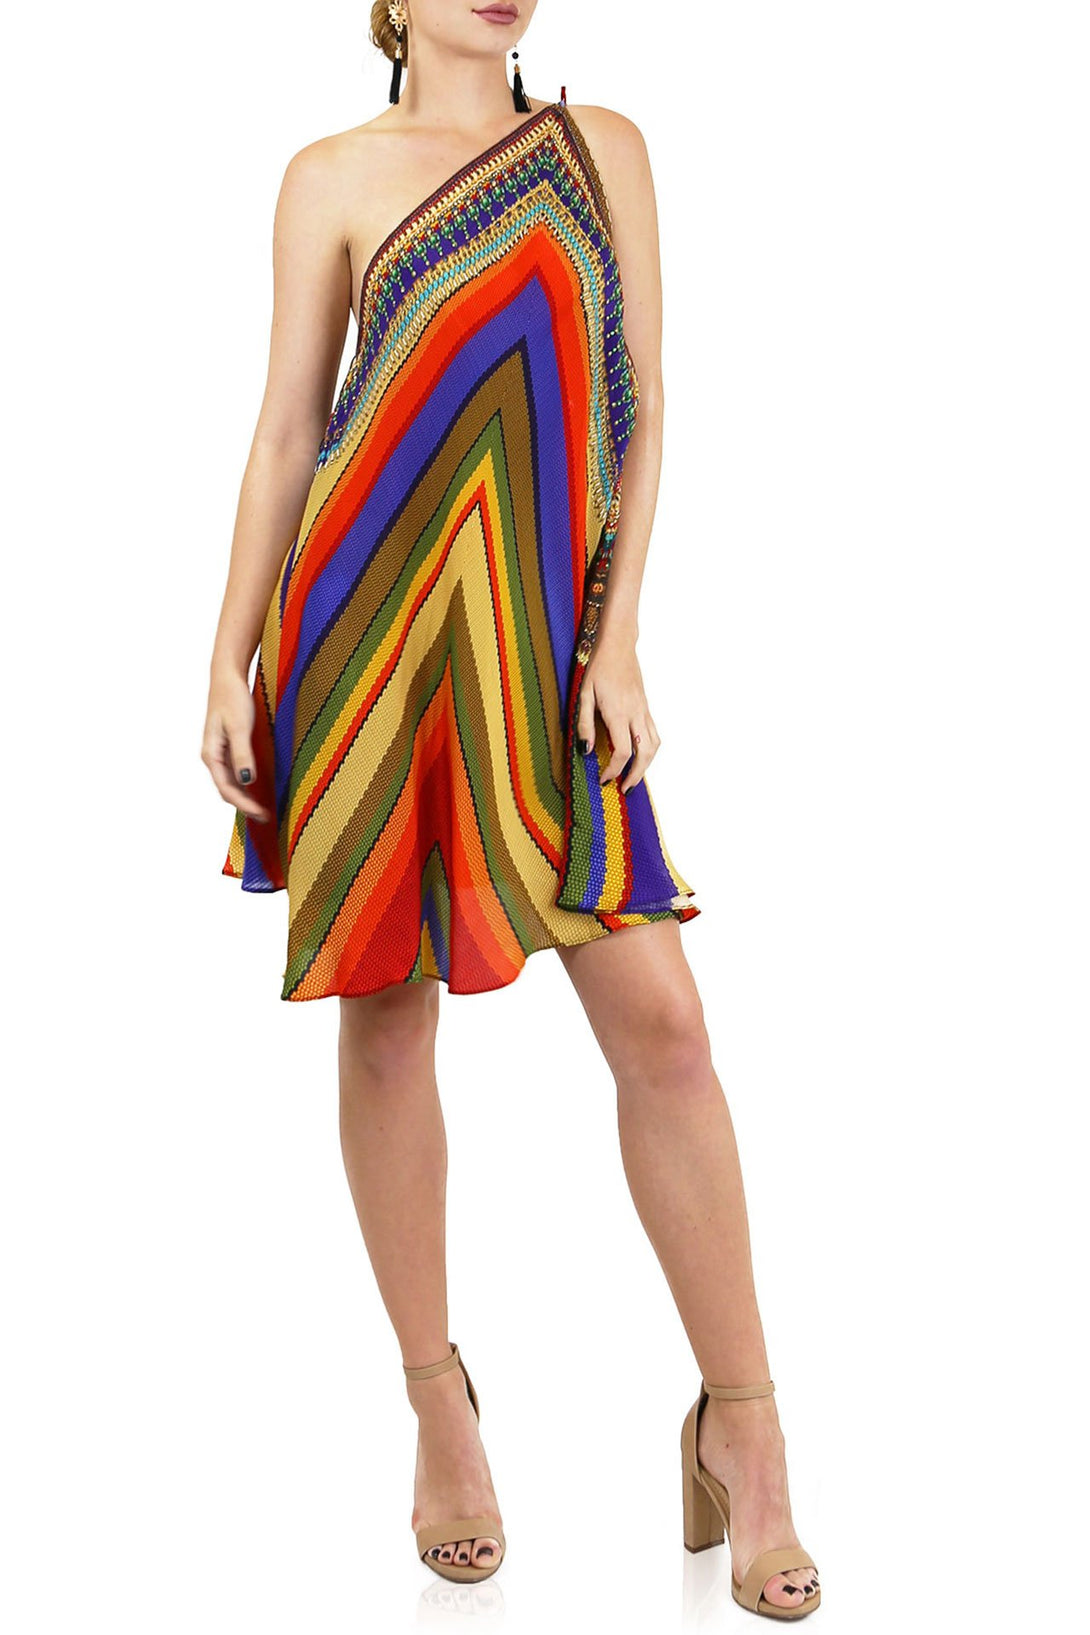  multi colour dress, Shahida Parides, cute mini dresses, short sleeveless summer dresses,